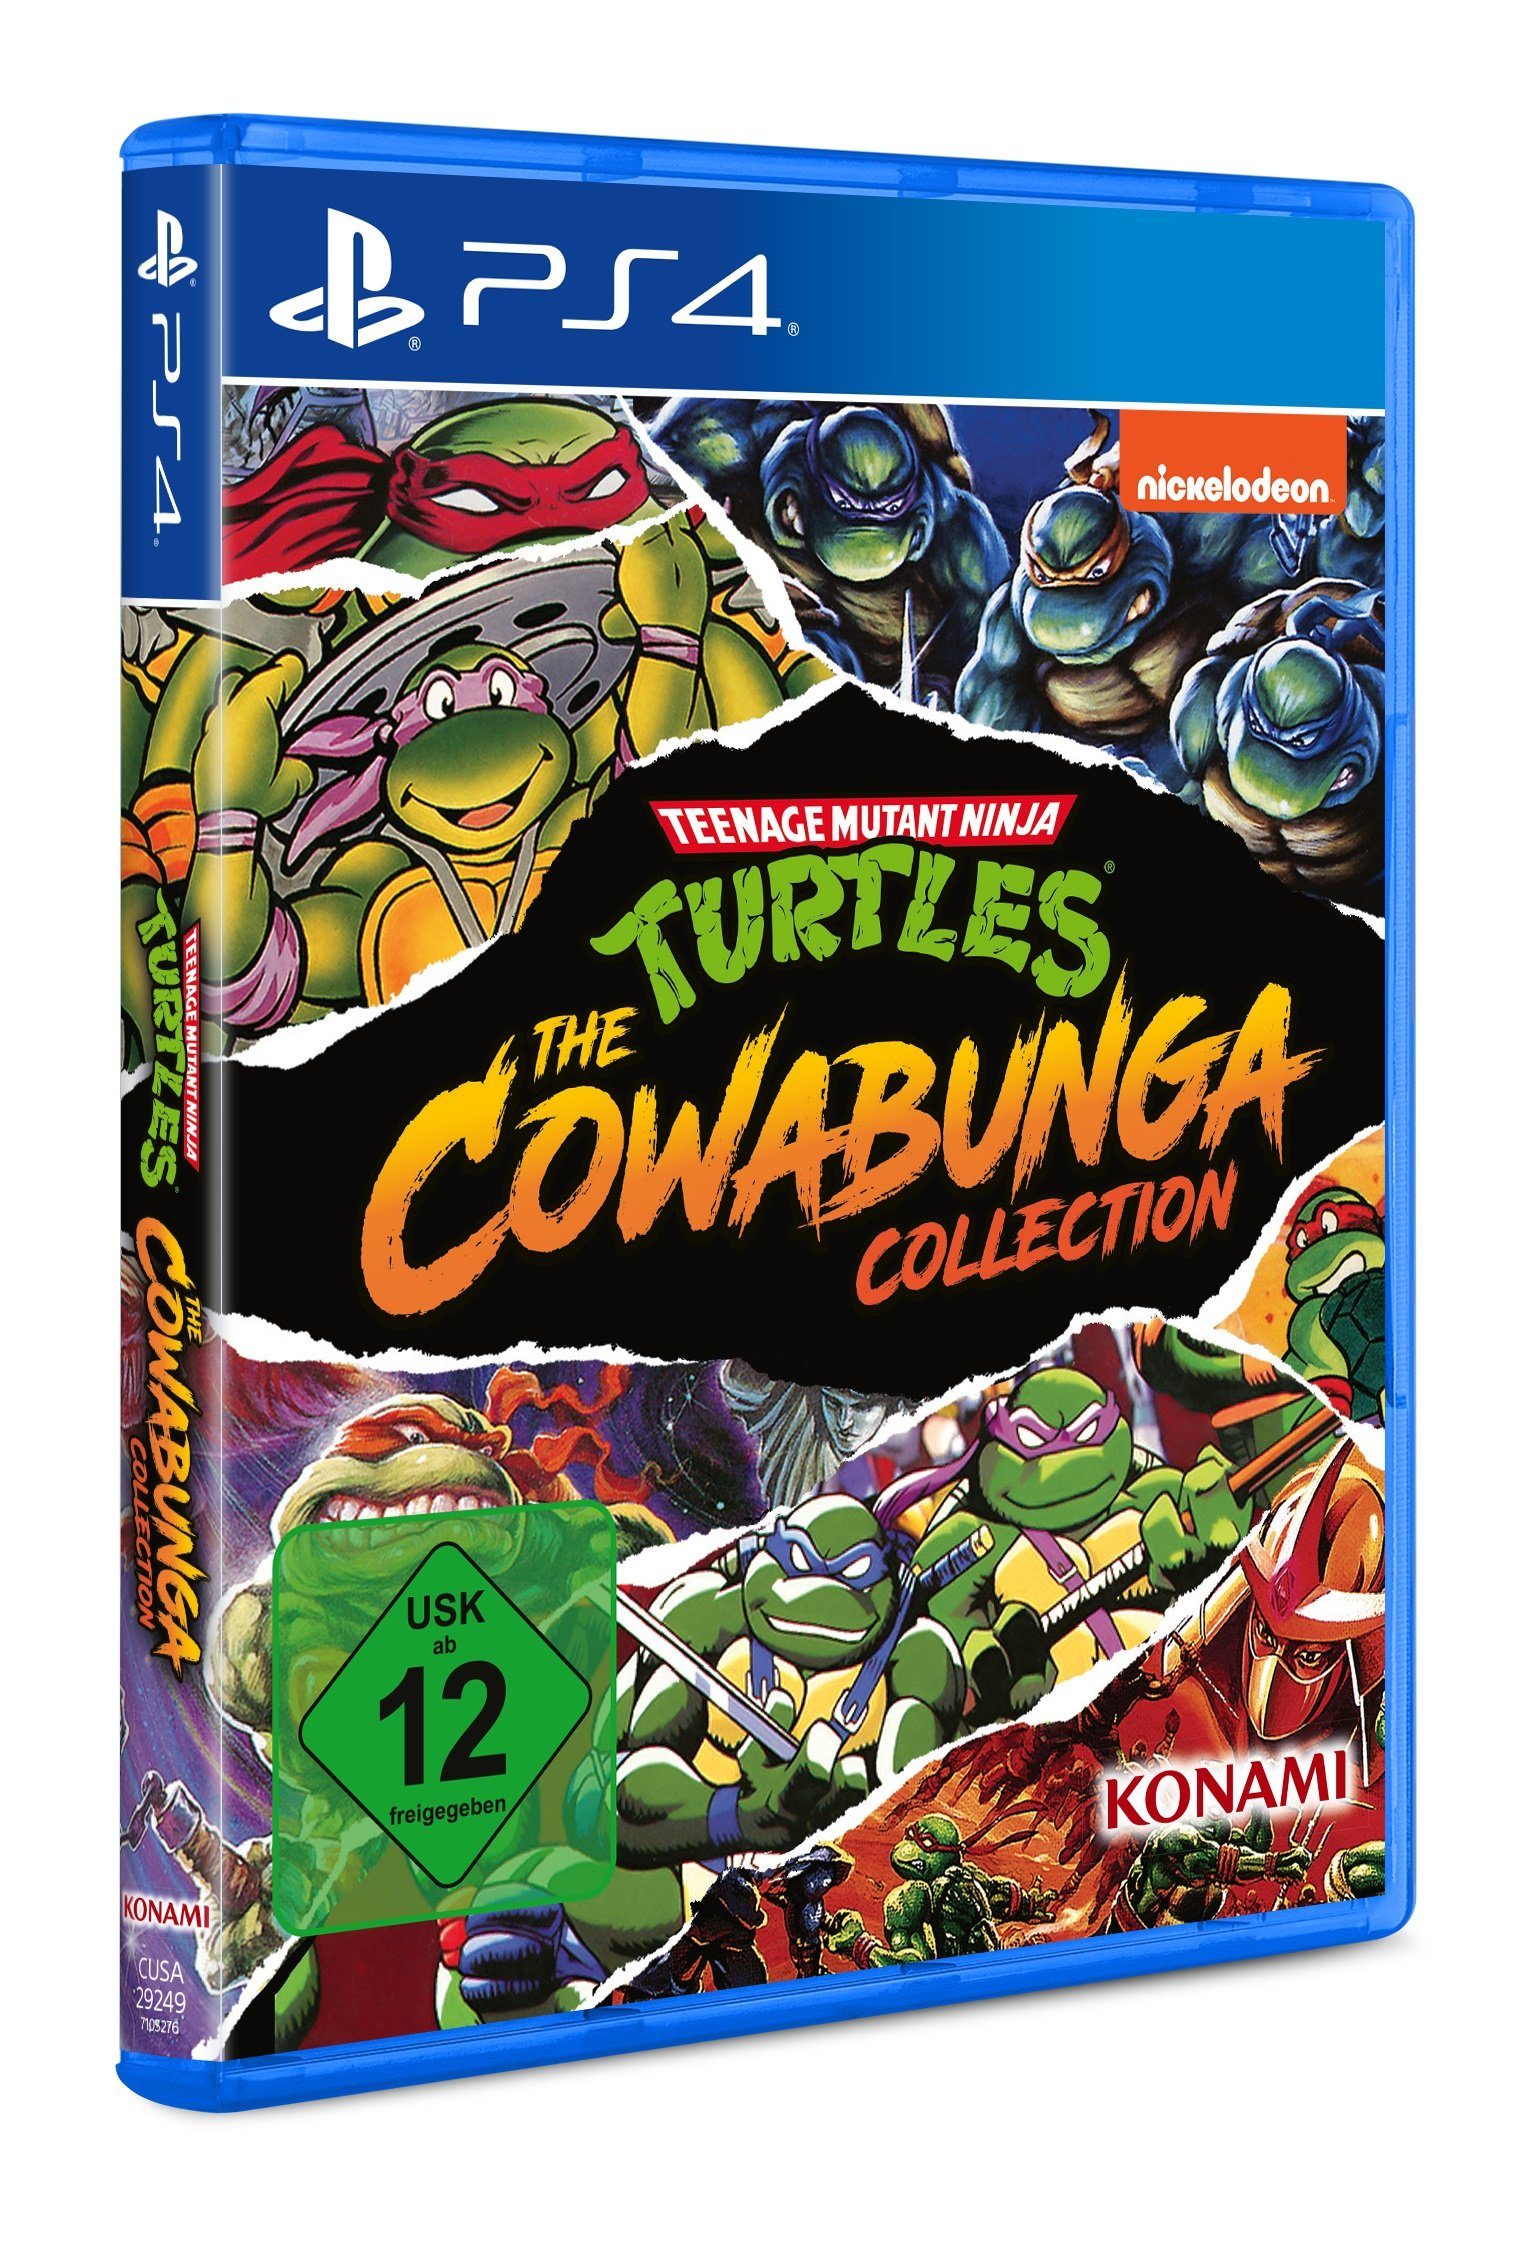 4 PlayStation Teenage Turtles Ninja Mutant - Cowabunga Konami Collection The